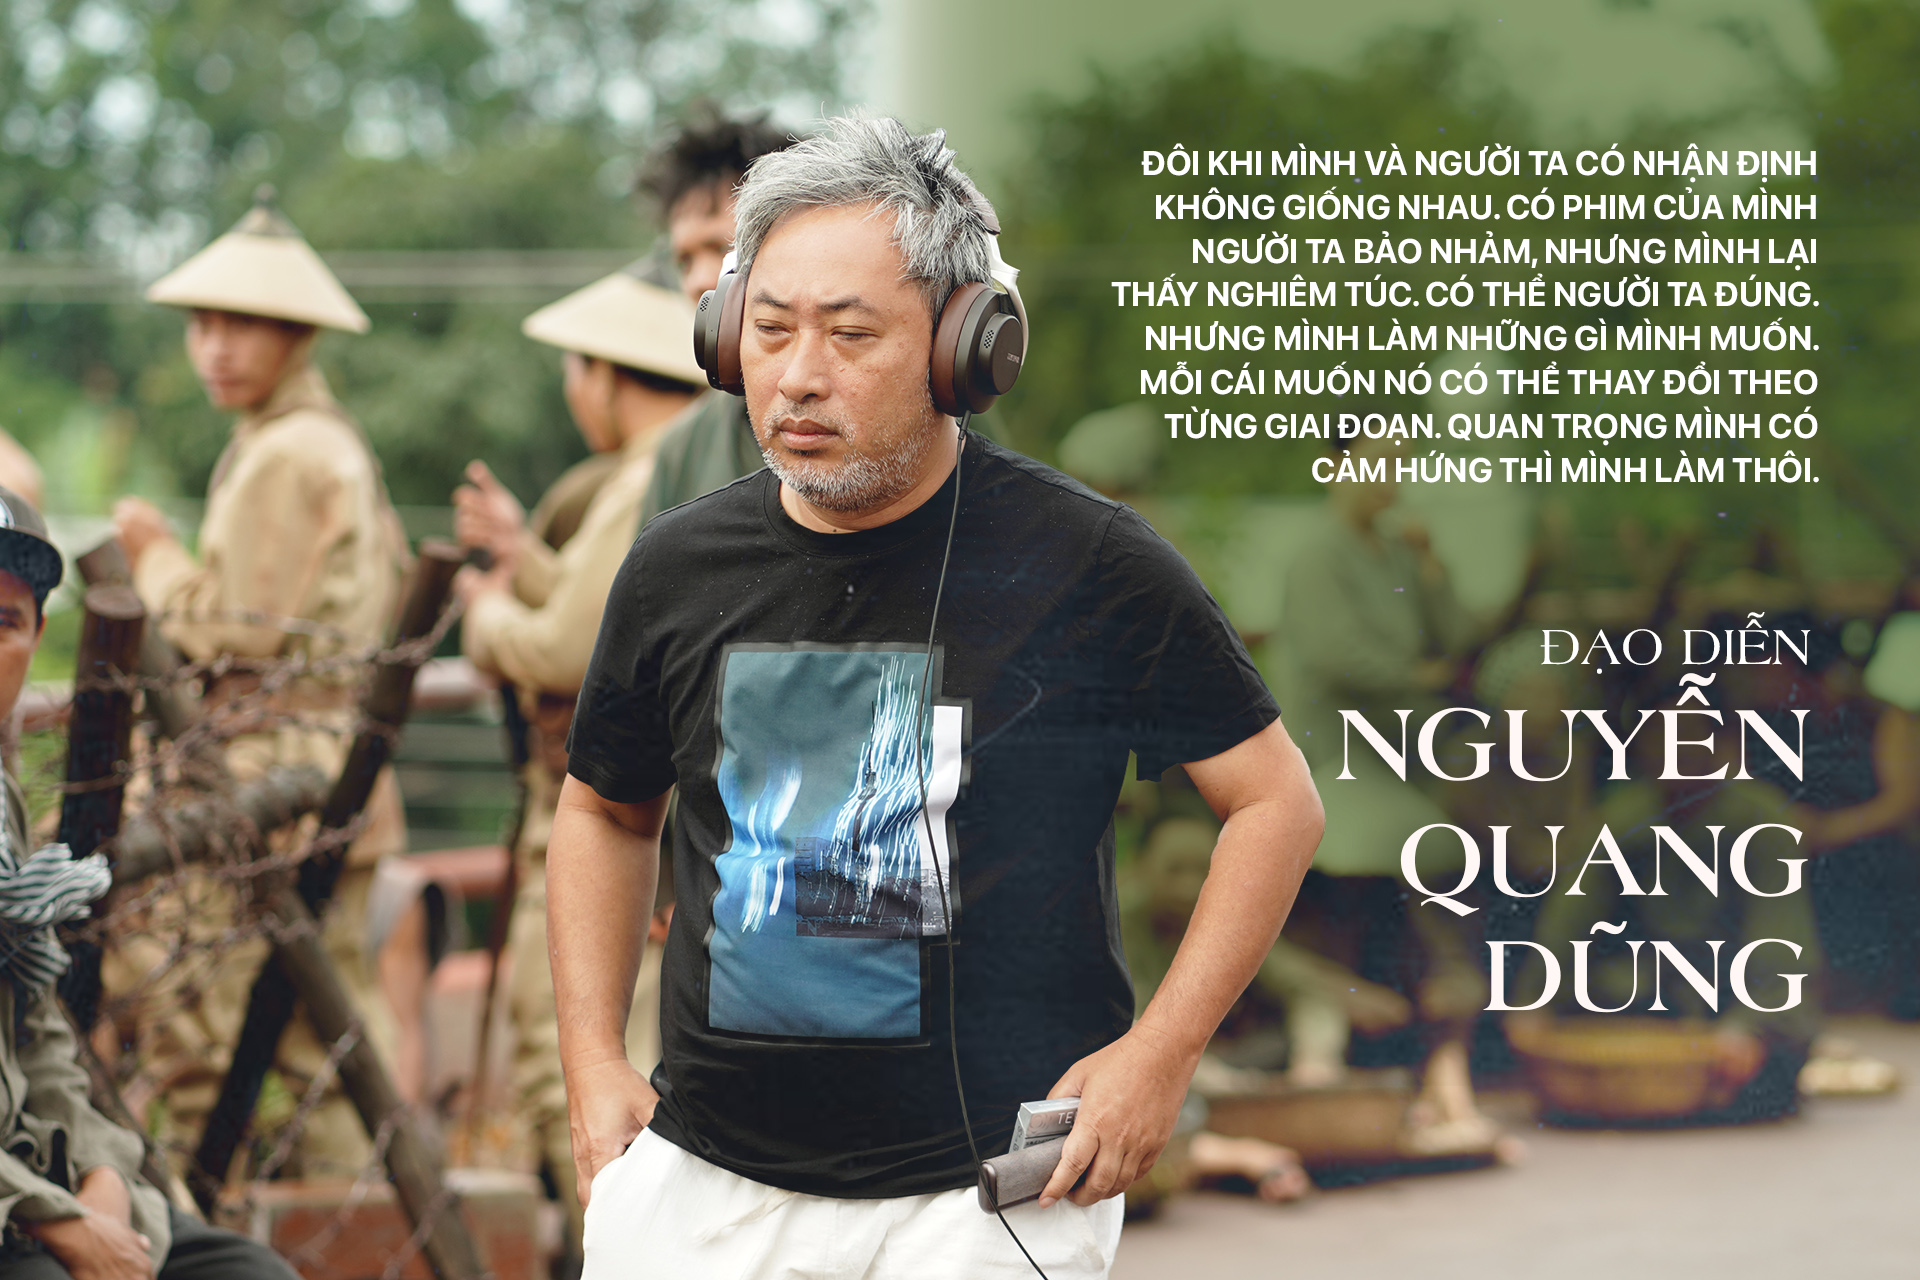 Đạo diễn Nguyễn Quang Dũng: “Đi sâu vào mới thấy hết cái đẹp của miền Tây” - Ảnh 5.